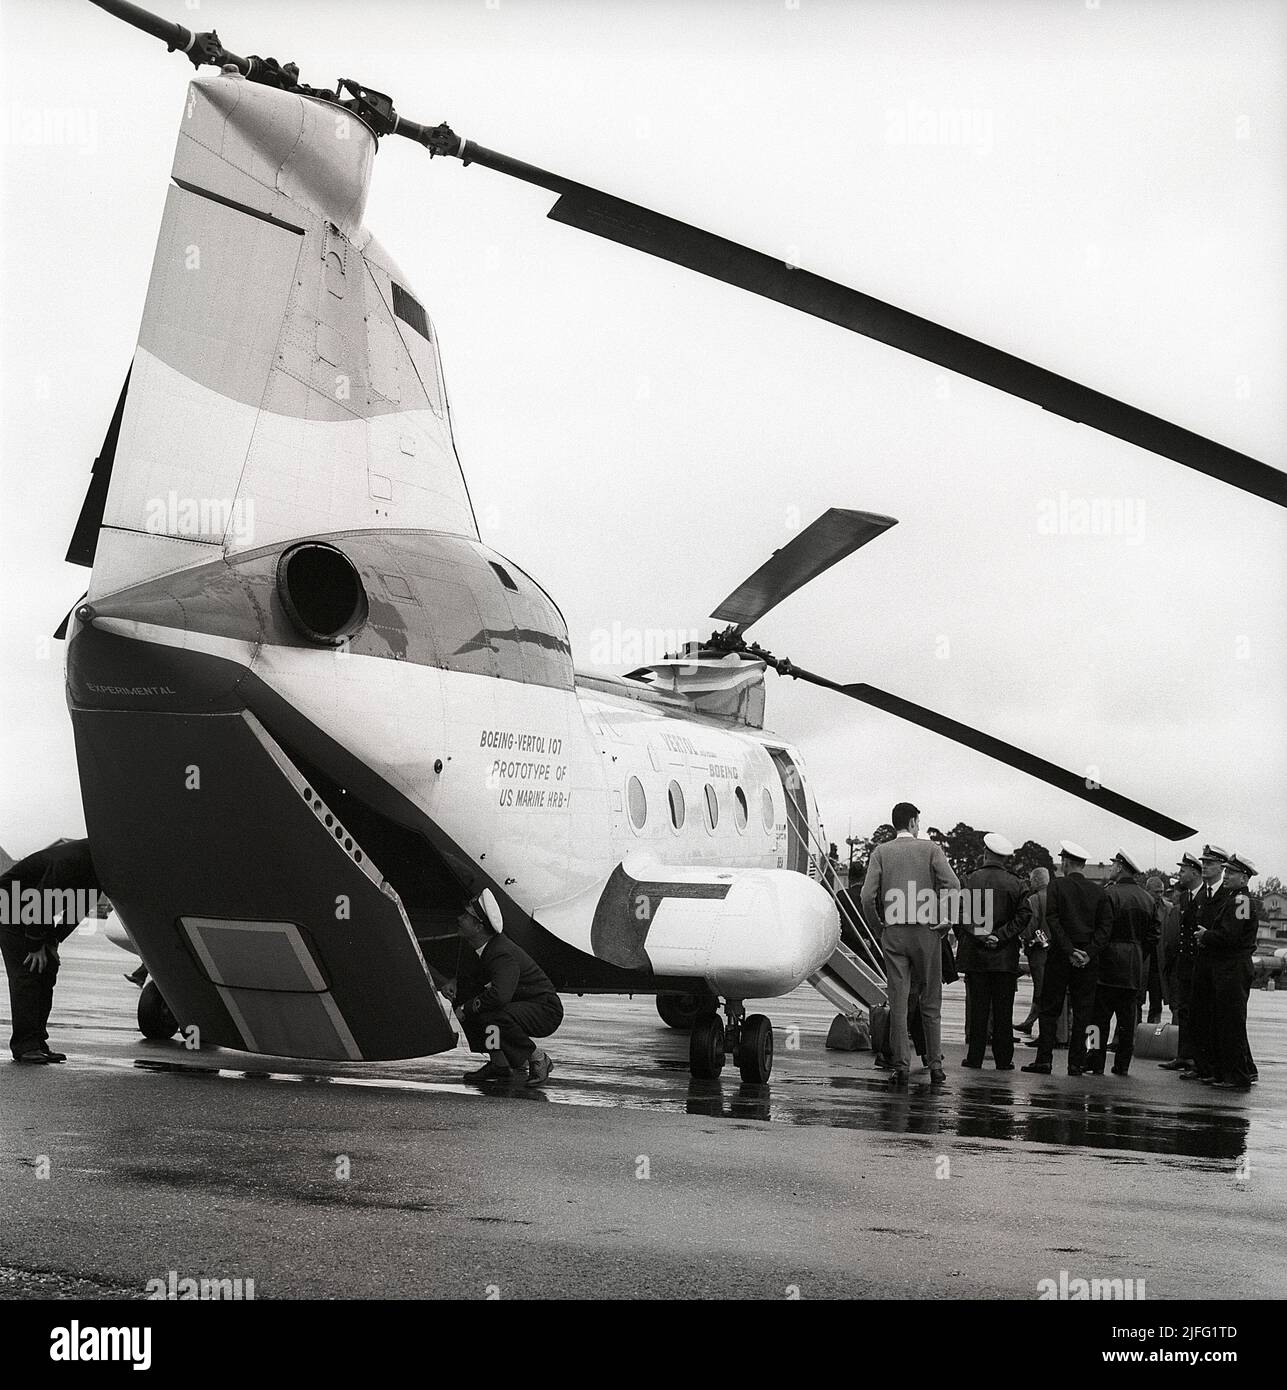 Histoire de l'hélicoptère. Le Boeing Vertol 107, également appelé HKP 4. Hélicoptère développé par la société américaine Vertol qui a été passionné par Boeing qui a commencé la production de lui 1956. Les forces armées américaines ont commencé à l'utiliser sous le nom de CH-46 Sea Knight. L'armée suédoise a acquis 22 unités de l'hélicoptère avec la première livraison 1963 lorsque la photo est prise. Ils étaient primaires d'usad pour la recherche et la chasse sous-marine. Suède 1963. Réf. Kristoffersson CU26-1 CU26,27,28 Banque D'Images